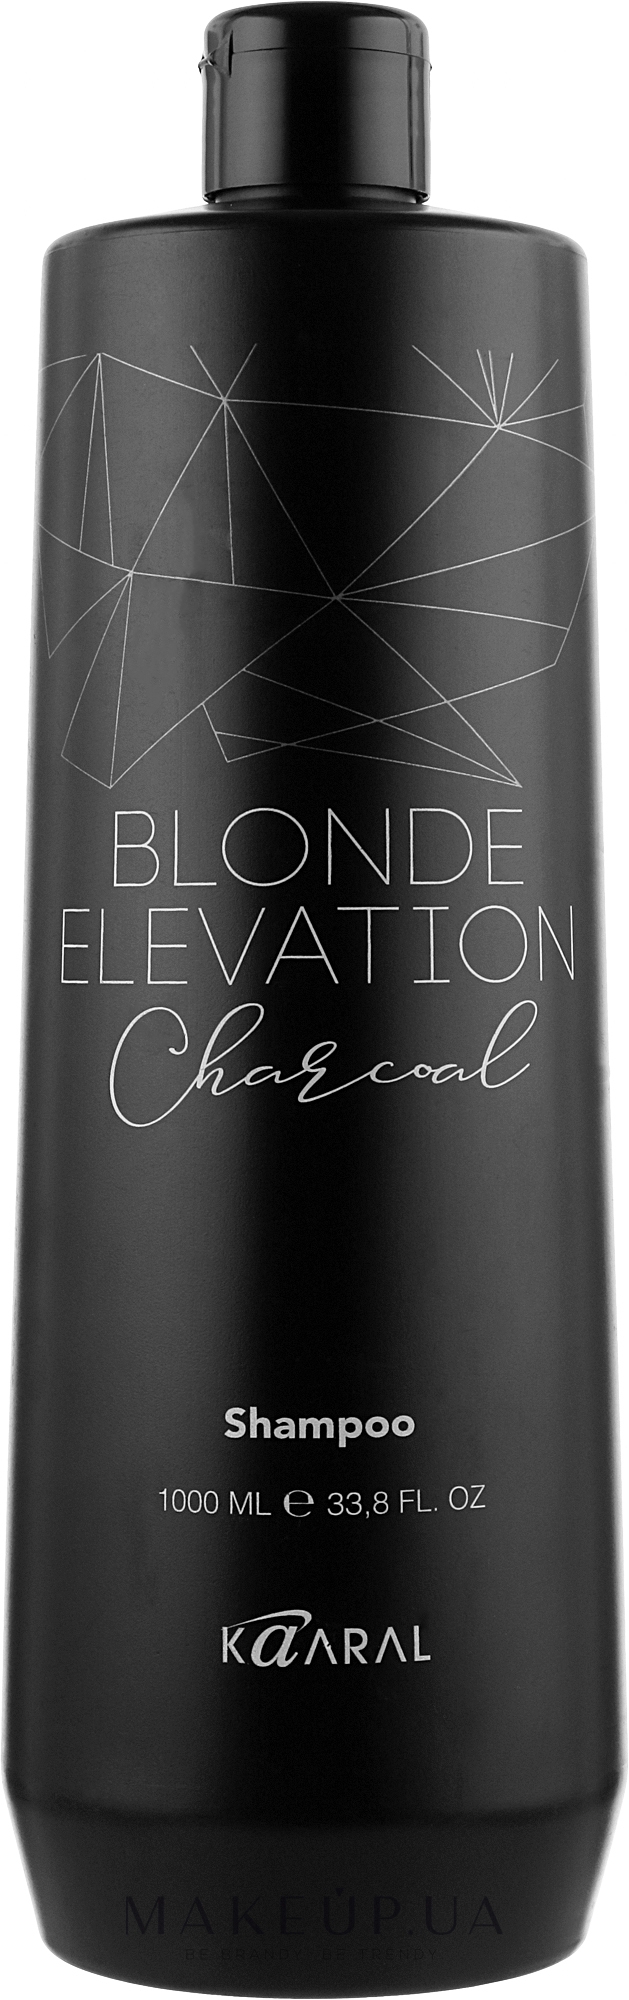 Чорний вугільний тонувальний шампунь для волосся - Kaaral Blonde Elevation Charcoal Shampoo — фото 1000ml